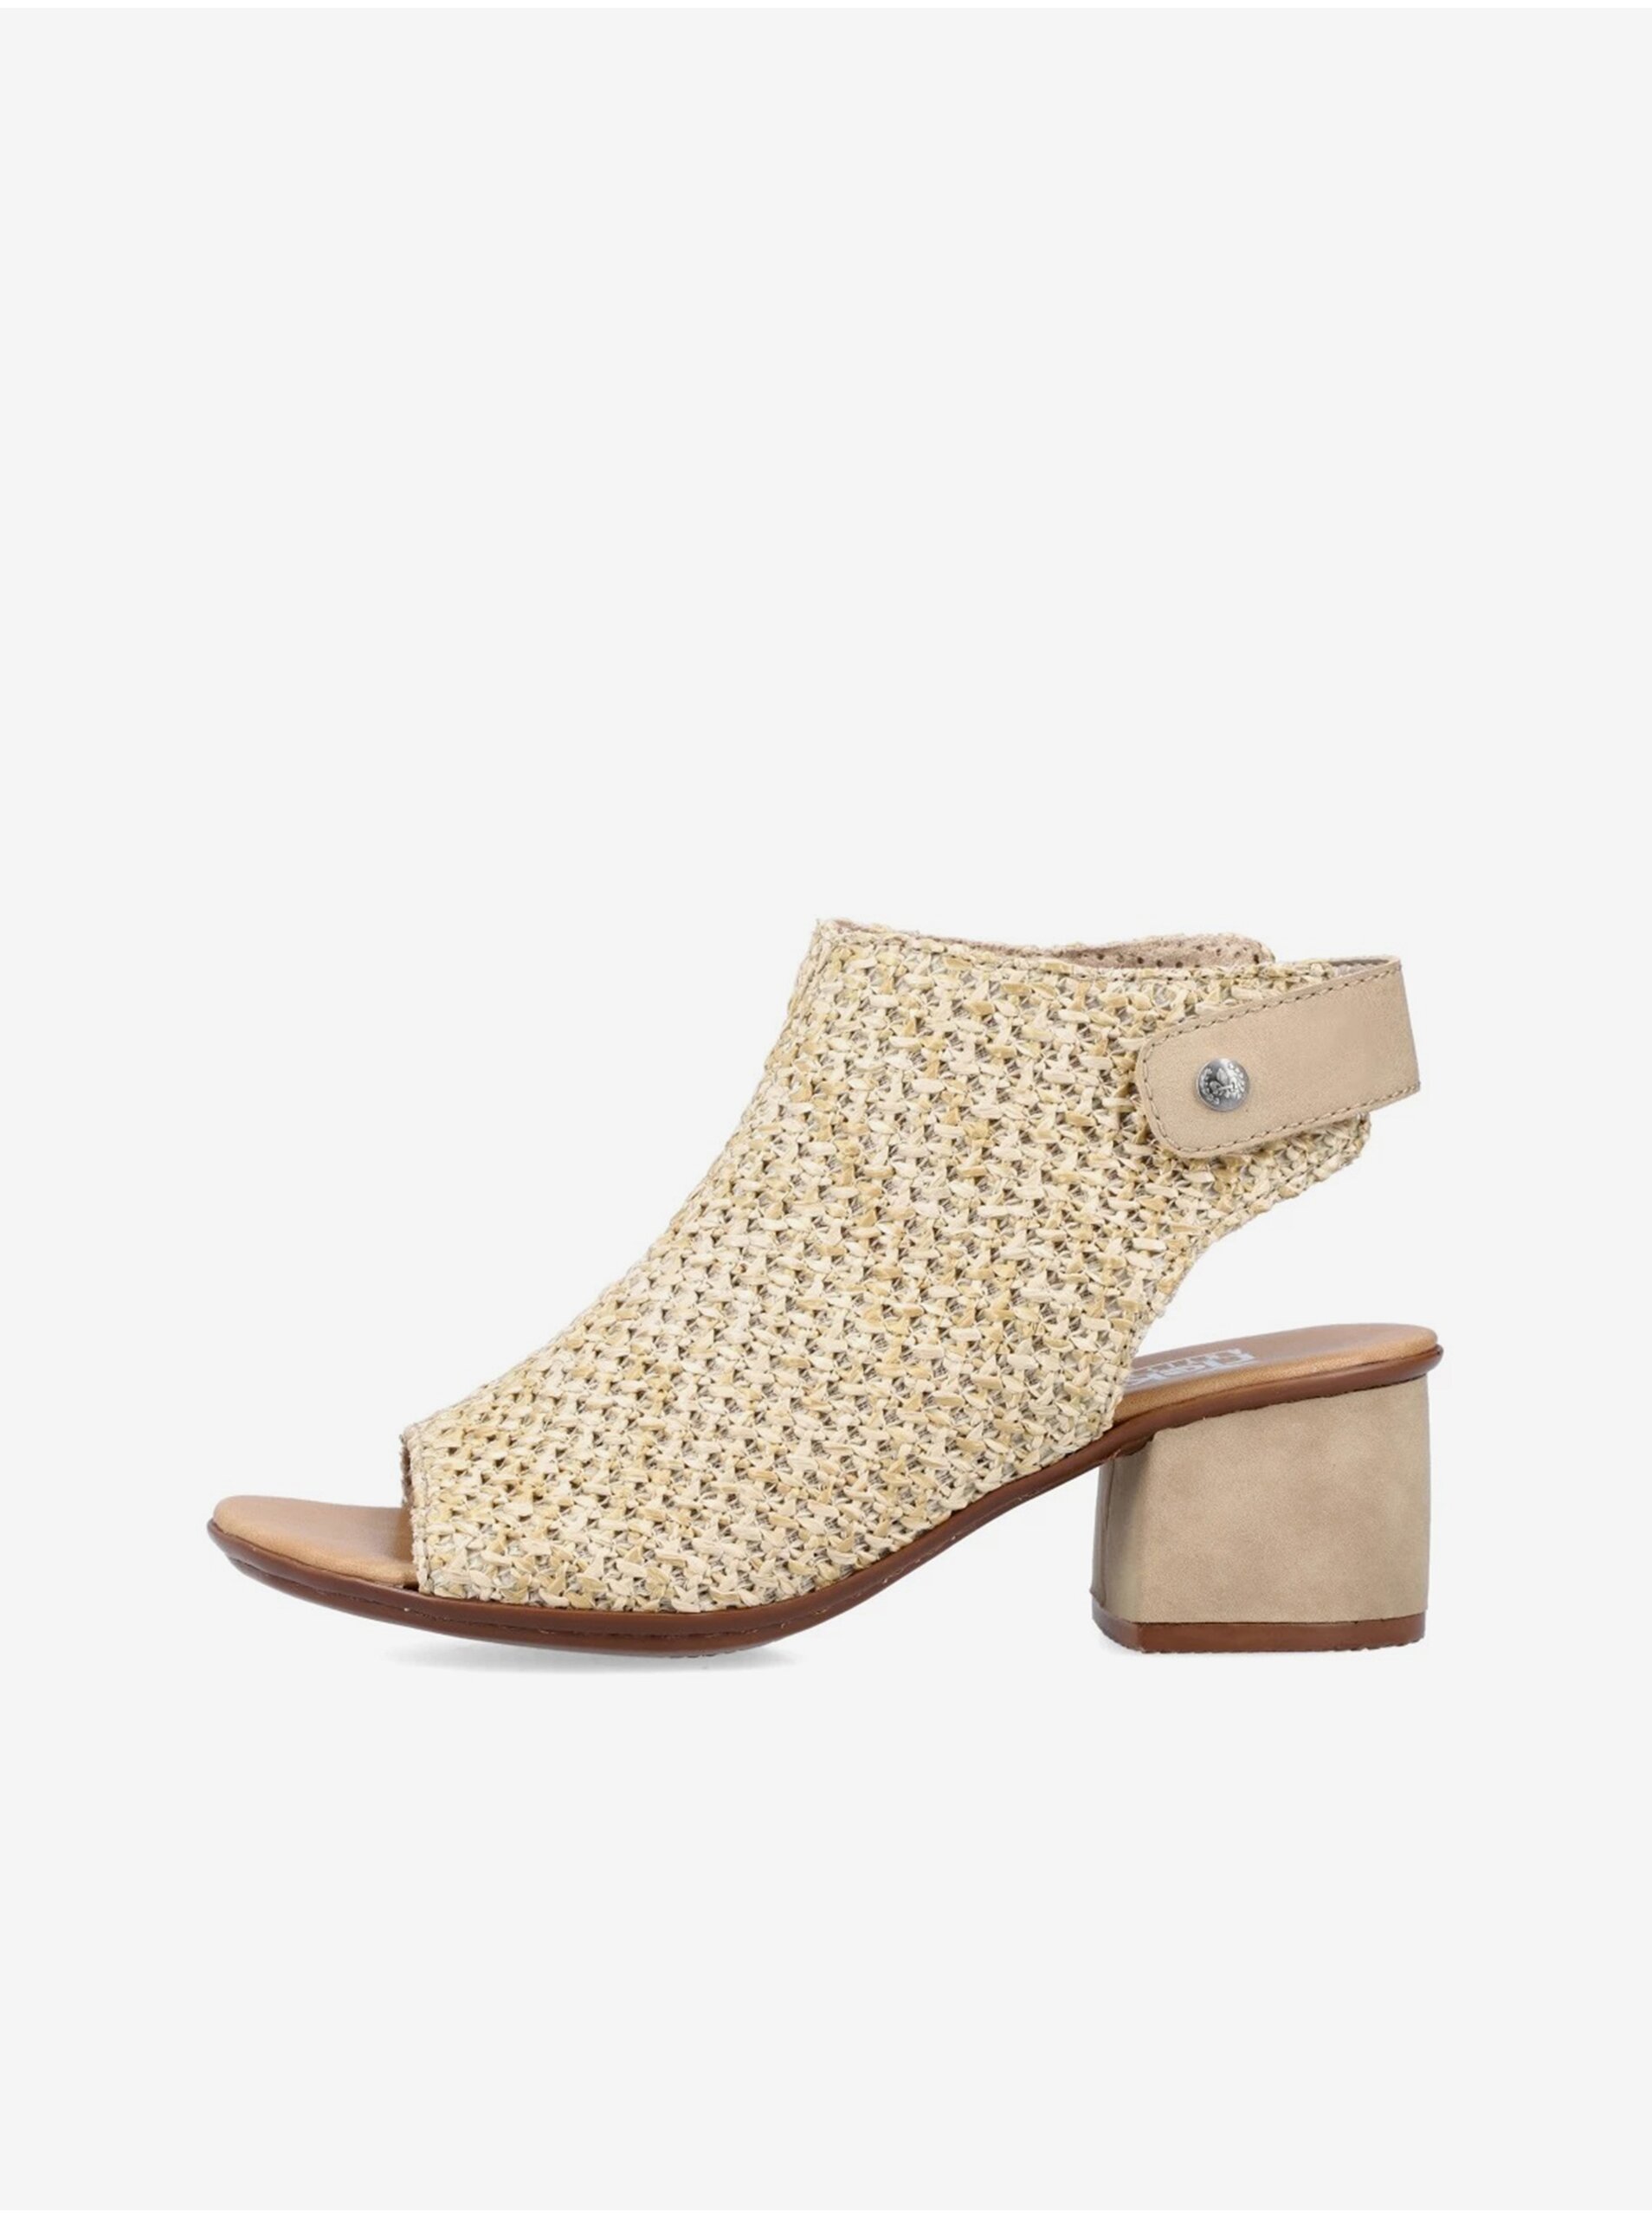 E-shop Béžové dámské sandálky na podpatku Rieker